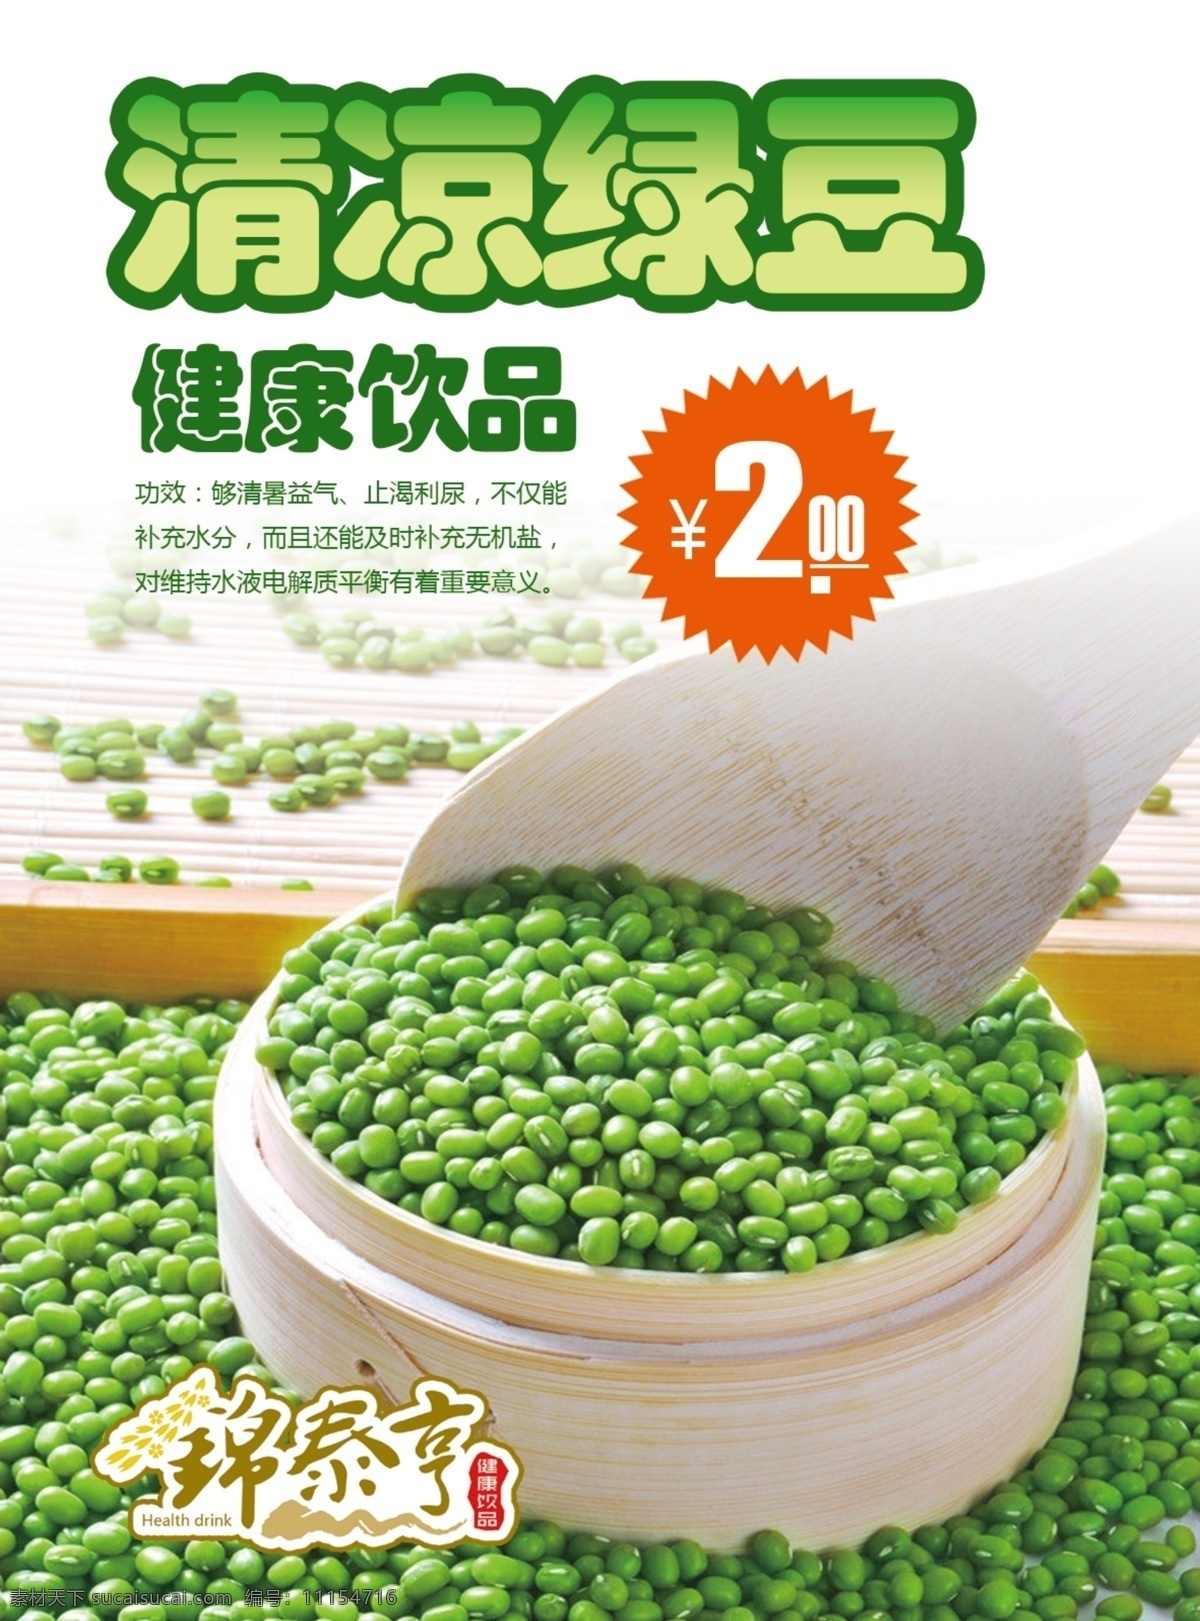 清凉绿豆海报 馍馍哥 清凉绿豆 绿豆 健康食品